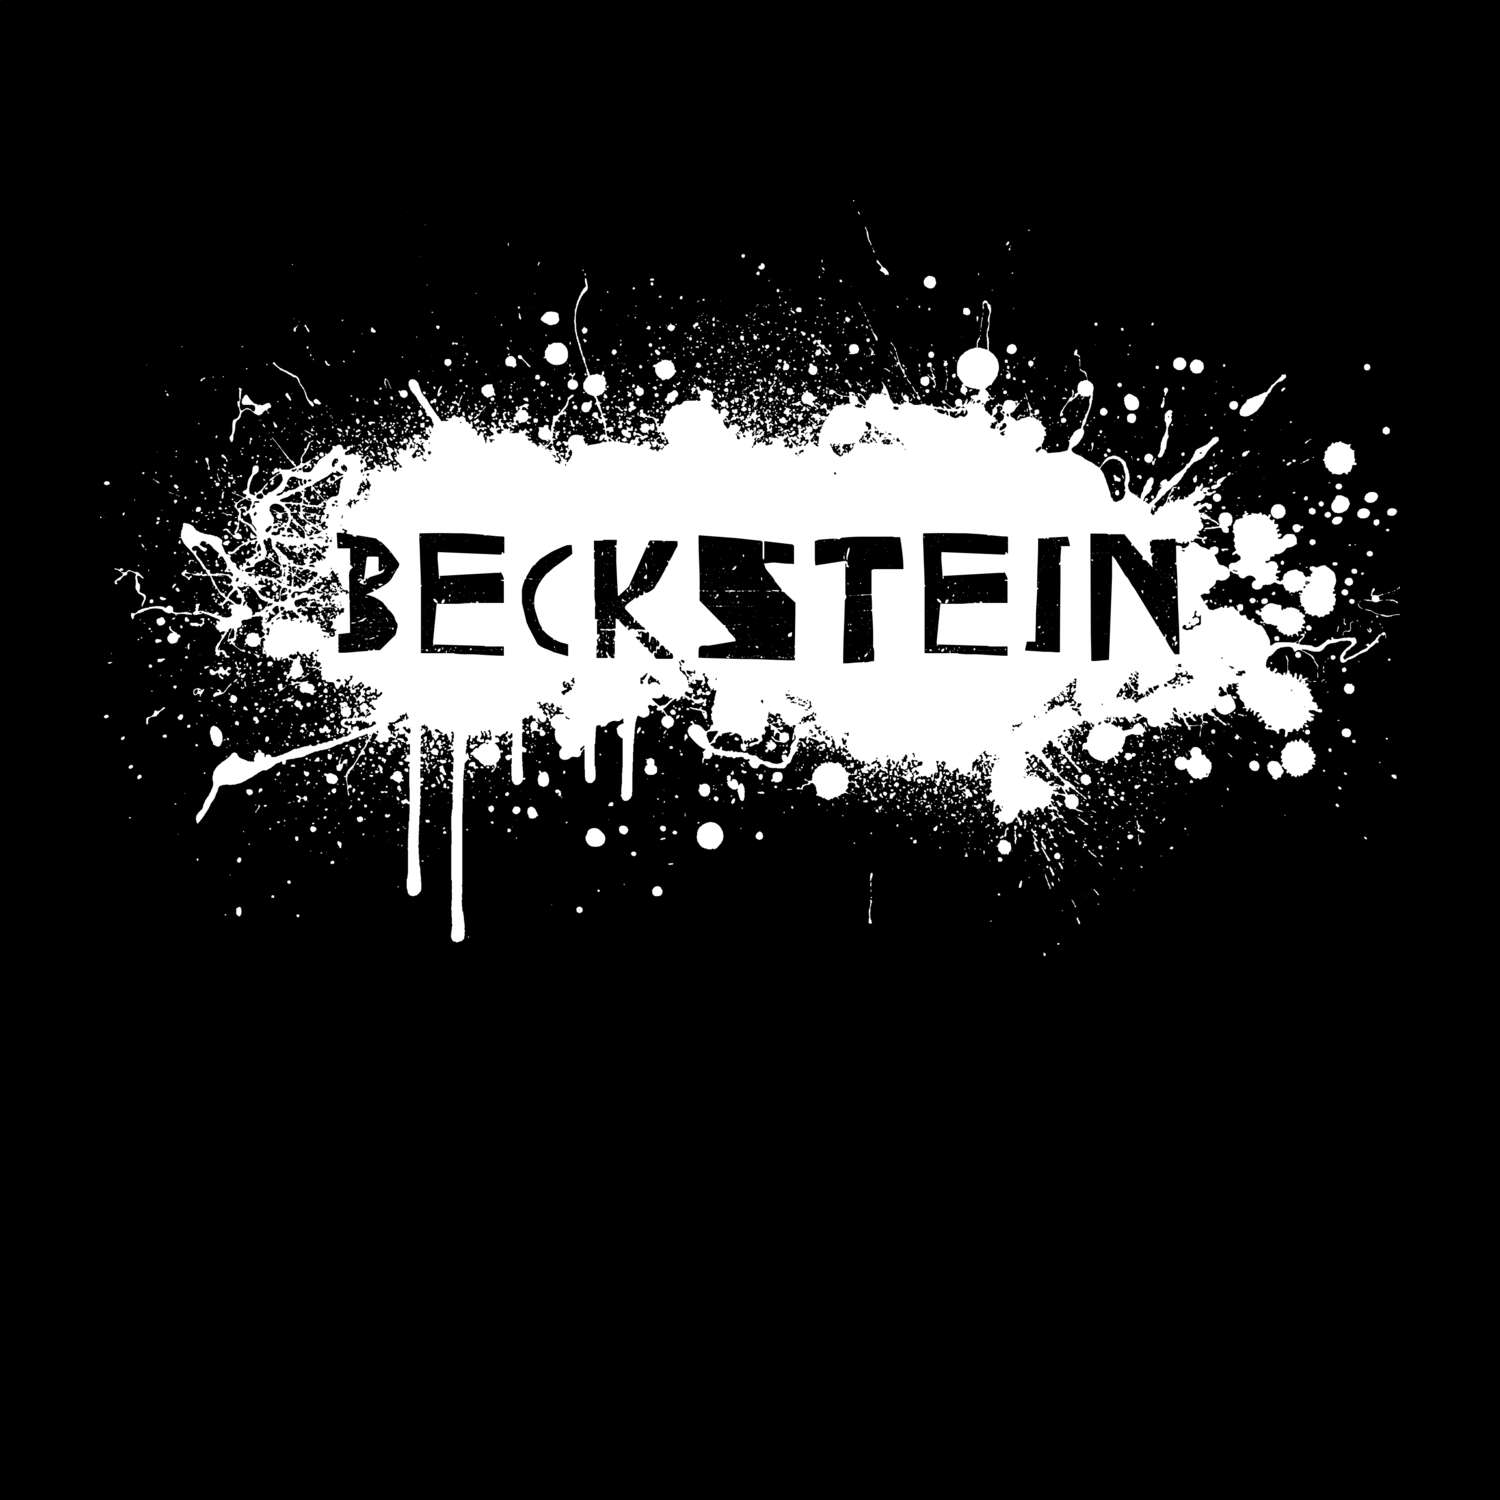 Beckstein T-Shirt »Paint Splash Punk«